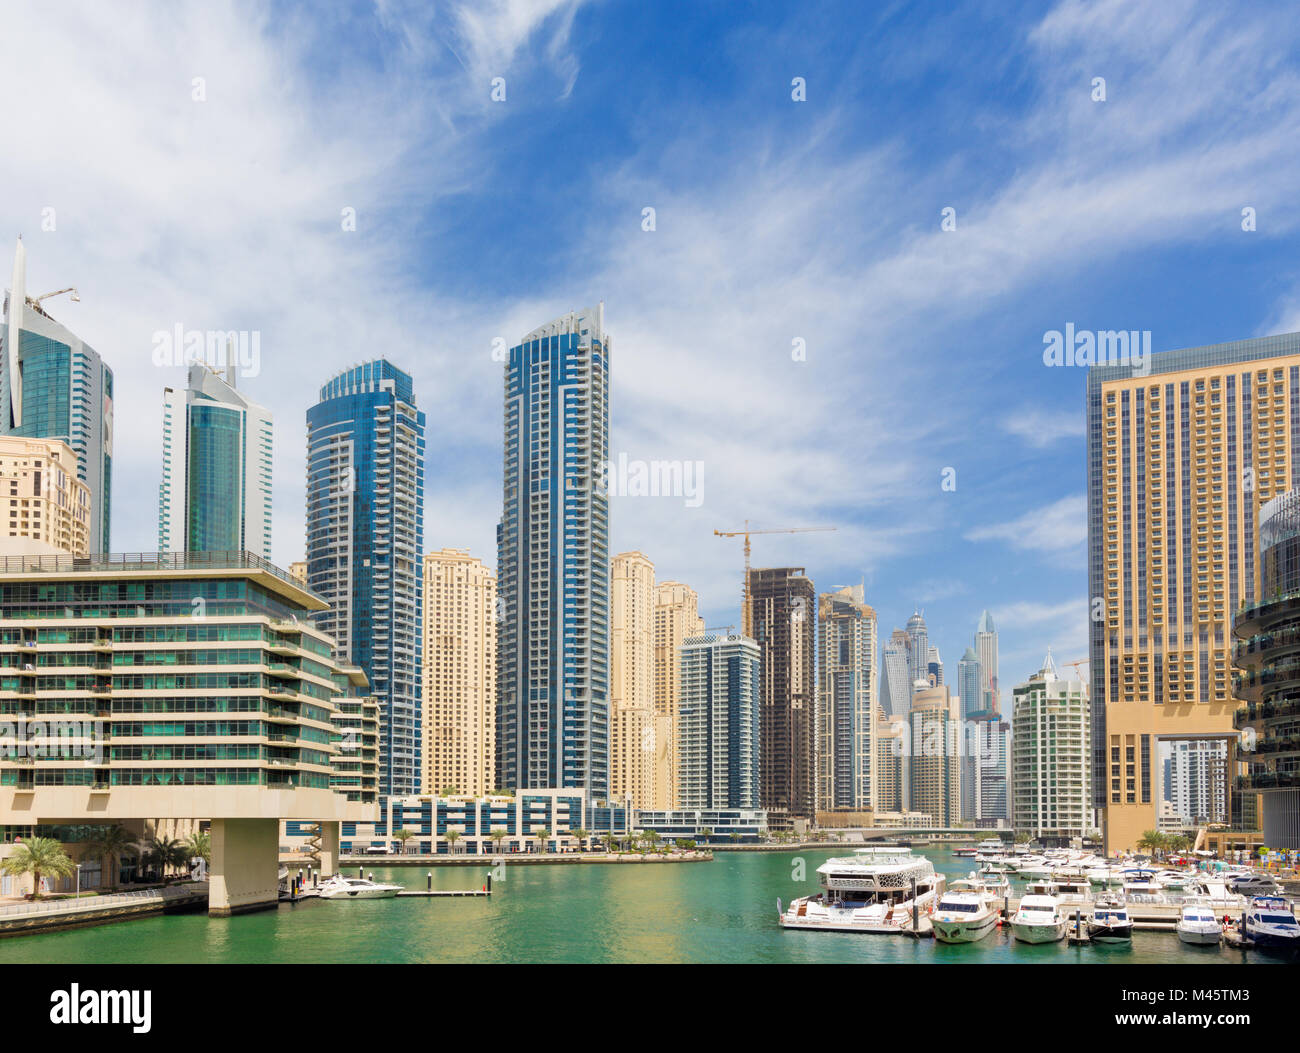 Arabo, arabo, architettura, costruzione, business, città cityscape, Dubai, Emirates, golfo, alta, alberghi, luce, lusso, marina, moderno, panorama, promena Foto Stock